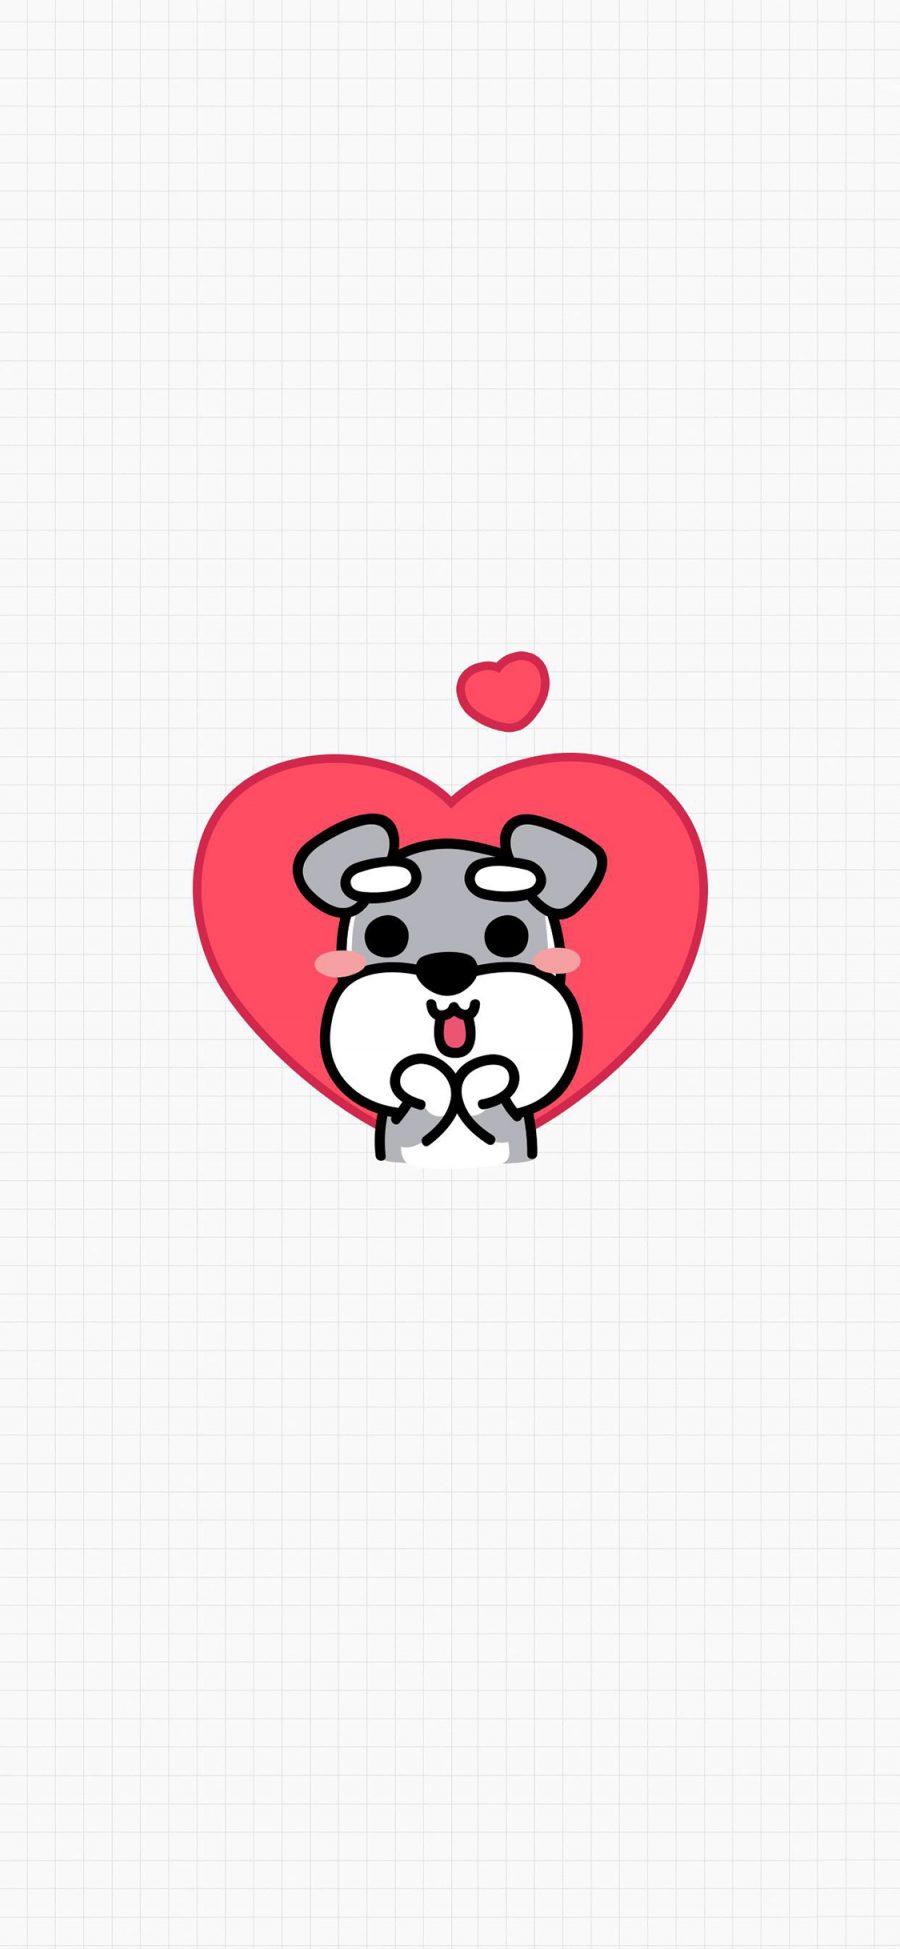 [2436×1125]雪纳瑞 狗 犬 卡通 可爱 爱心 苹果手机动漫壁纸图片